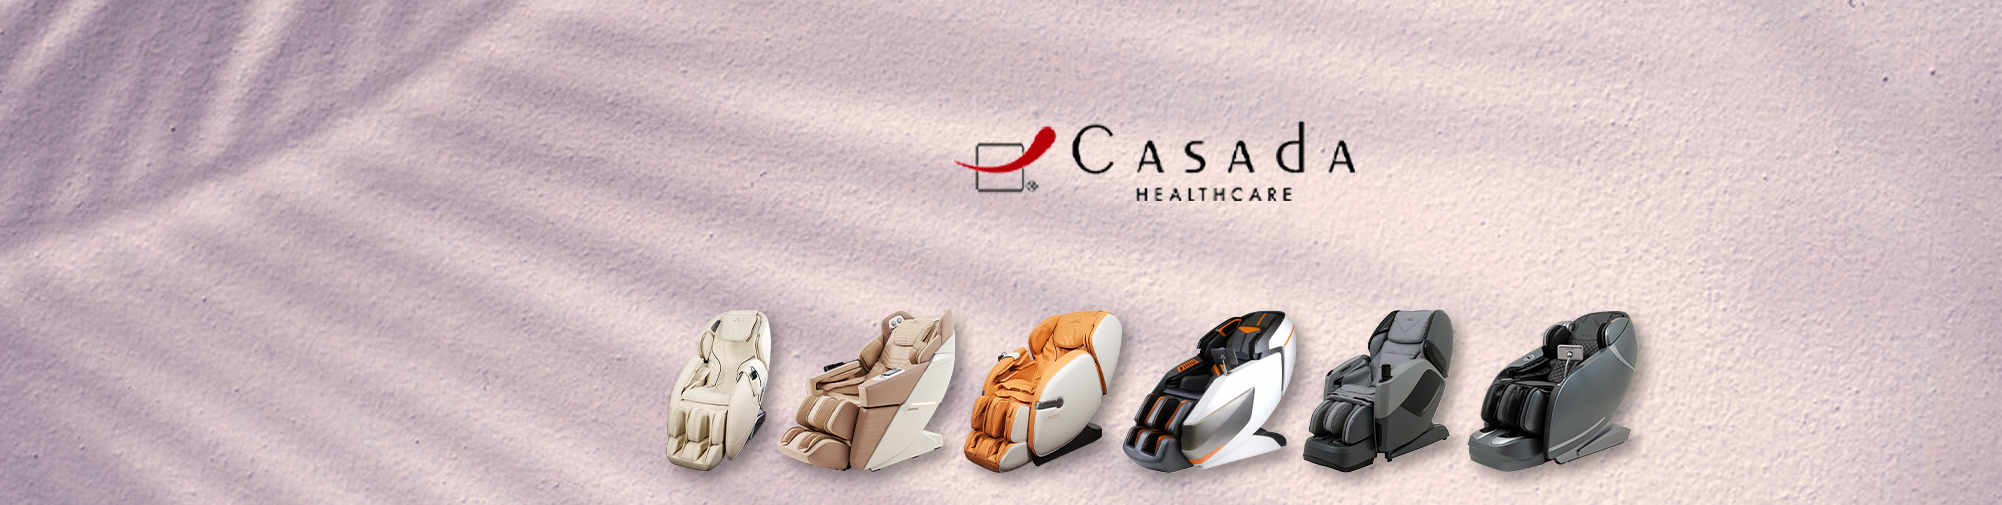 Casada - spolehlivý partner | Masážní křeslo World